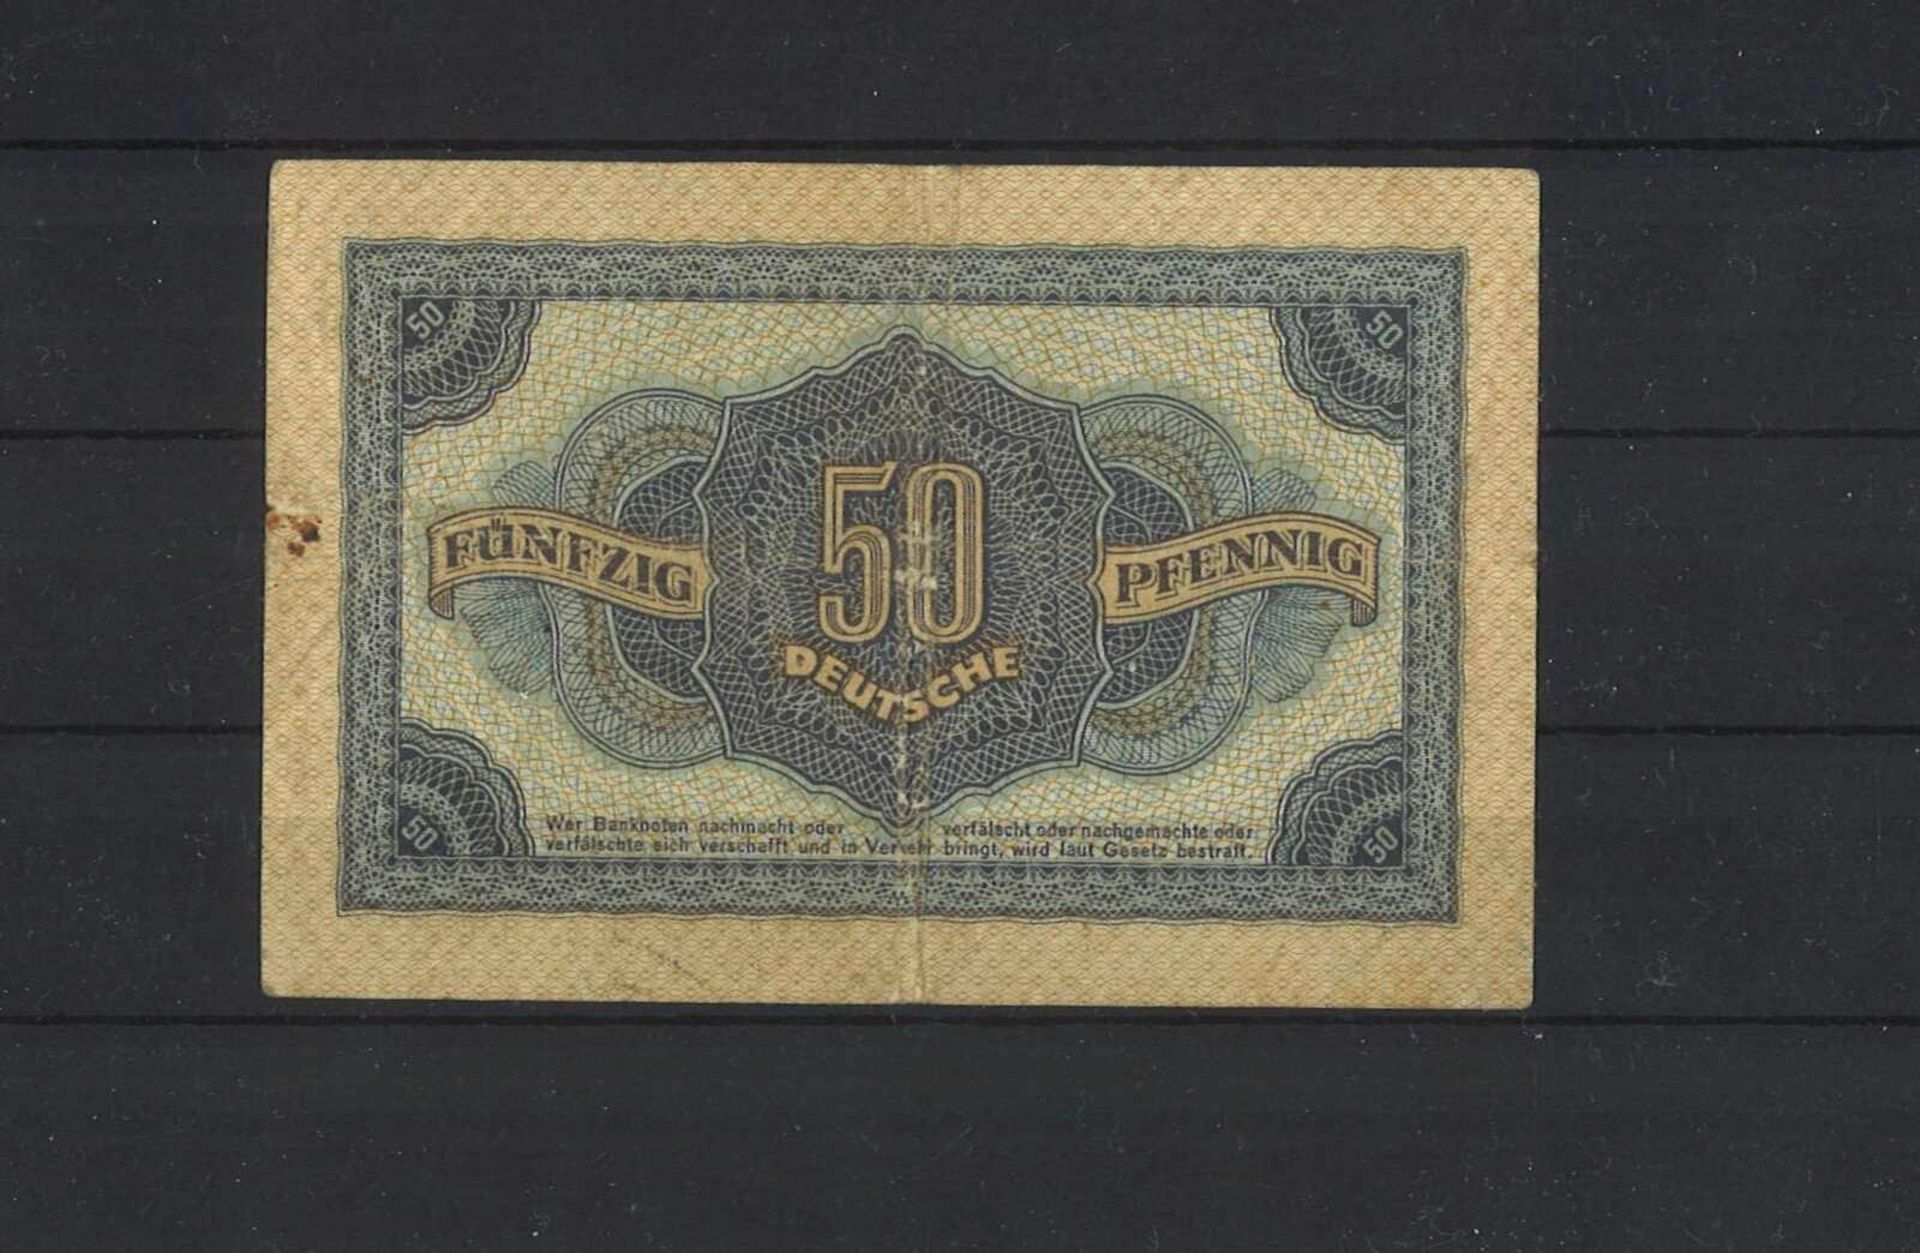 DDR Banknote, 50 Pfennig 1948, KN 6-stellig, 2 Buchstaben gebrandt. - Bild 2 aus 2